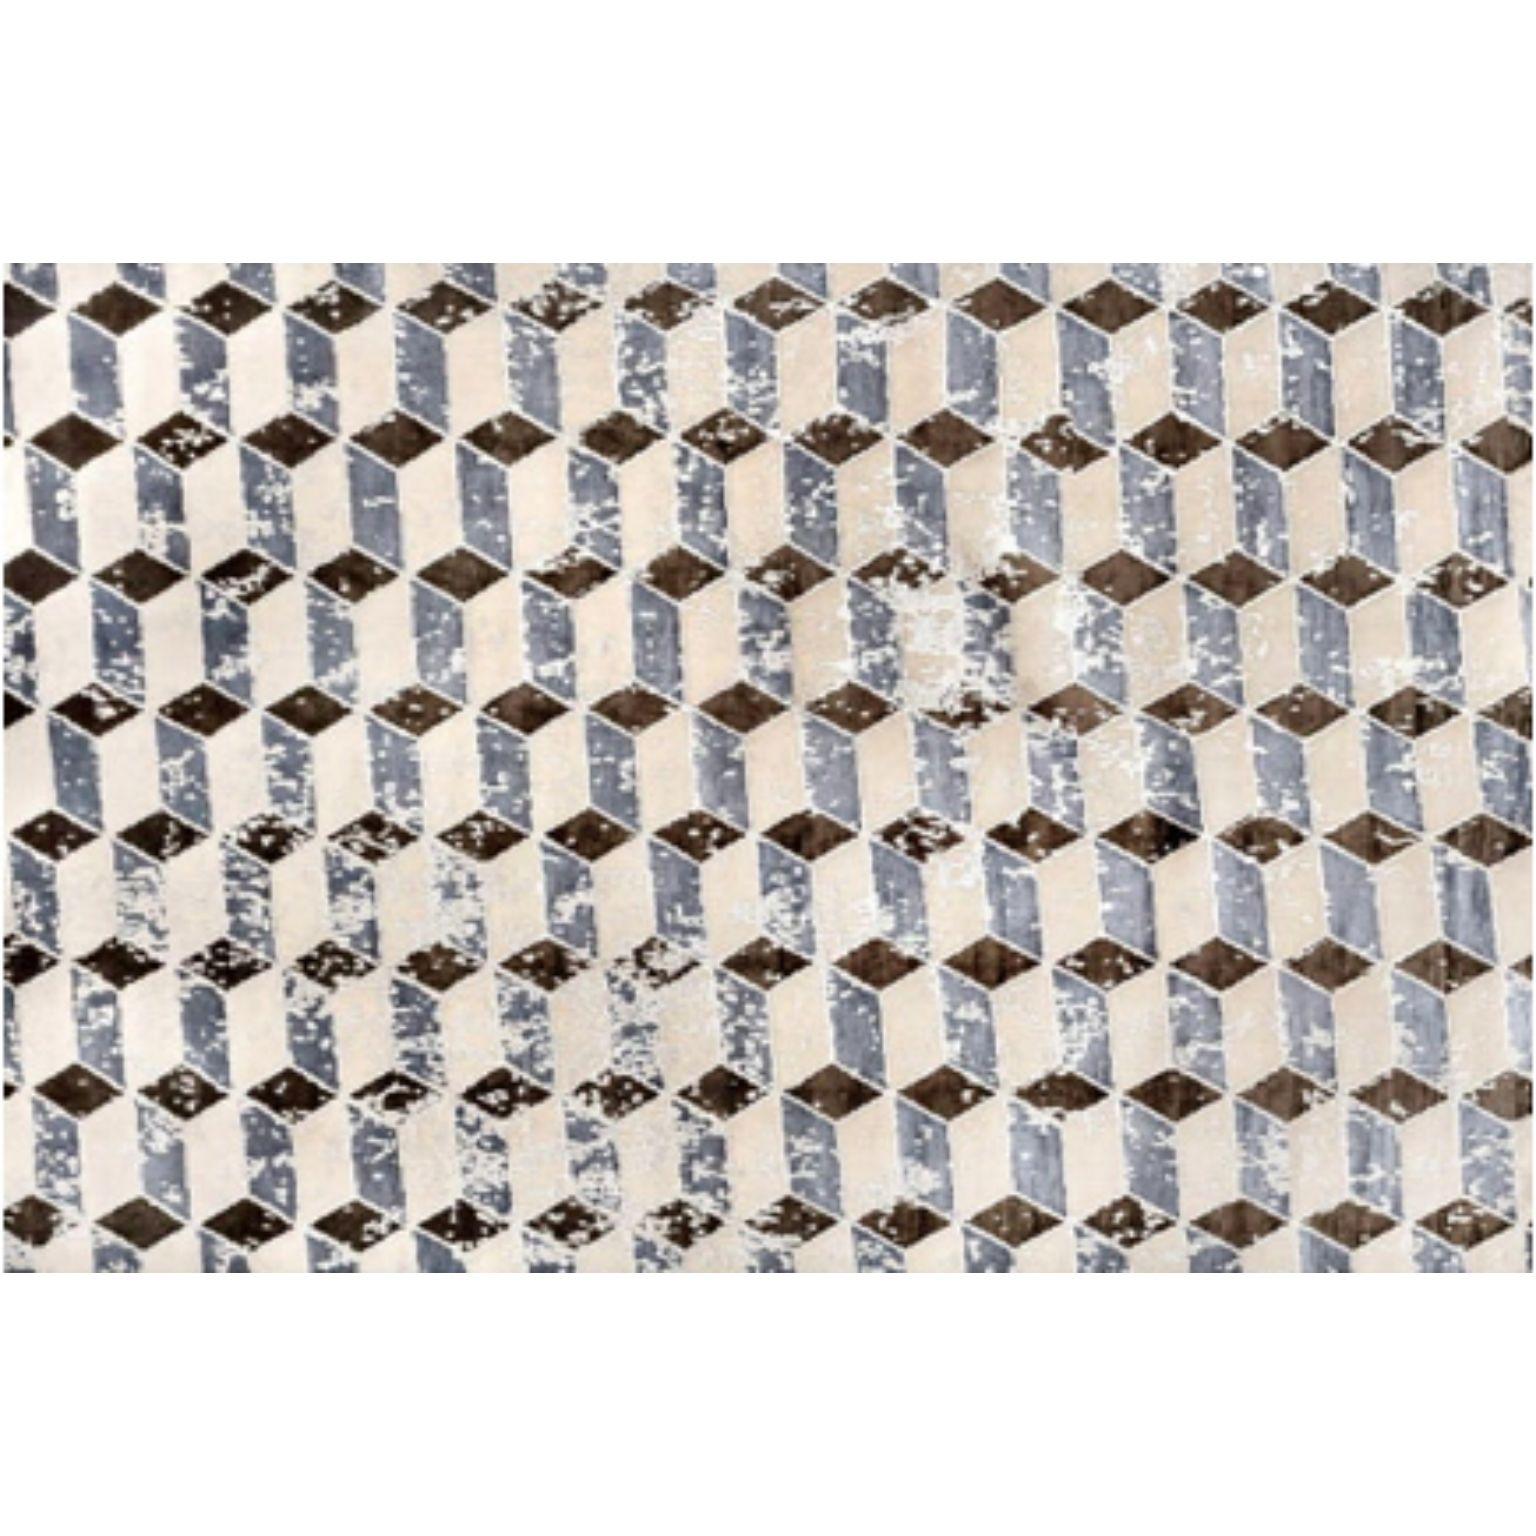 BRERA 400 teppich von Illulian
Abmessungen: T 400 x H 300 cm 
MATERIALIEN: Wolle 50%, Seide 50%
Je nach MATERIAL und Größe sind verschiedene Varianten möglich und die Preise können variieren.

Illulian, eine historische und prestigeträchtige